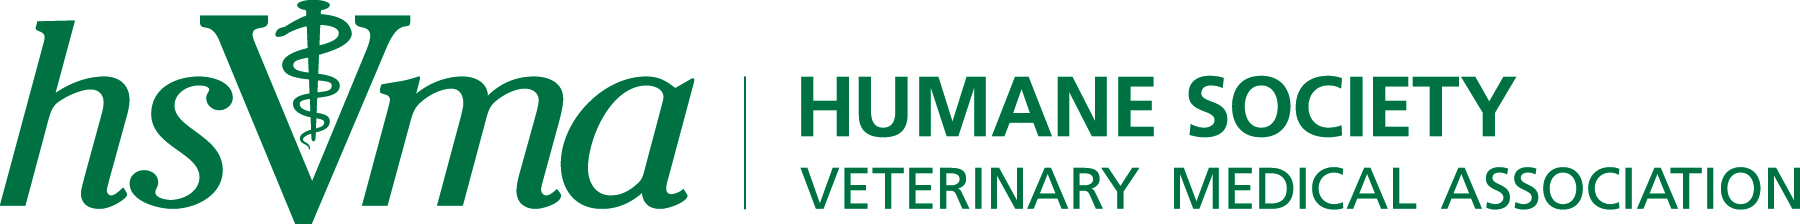 HSVMA Logo.jpg